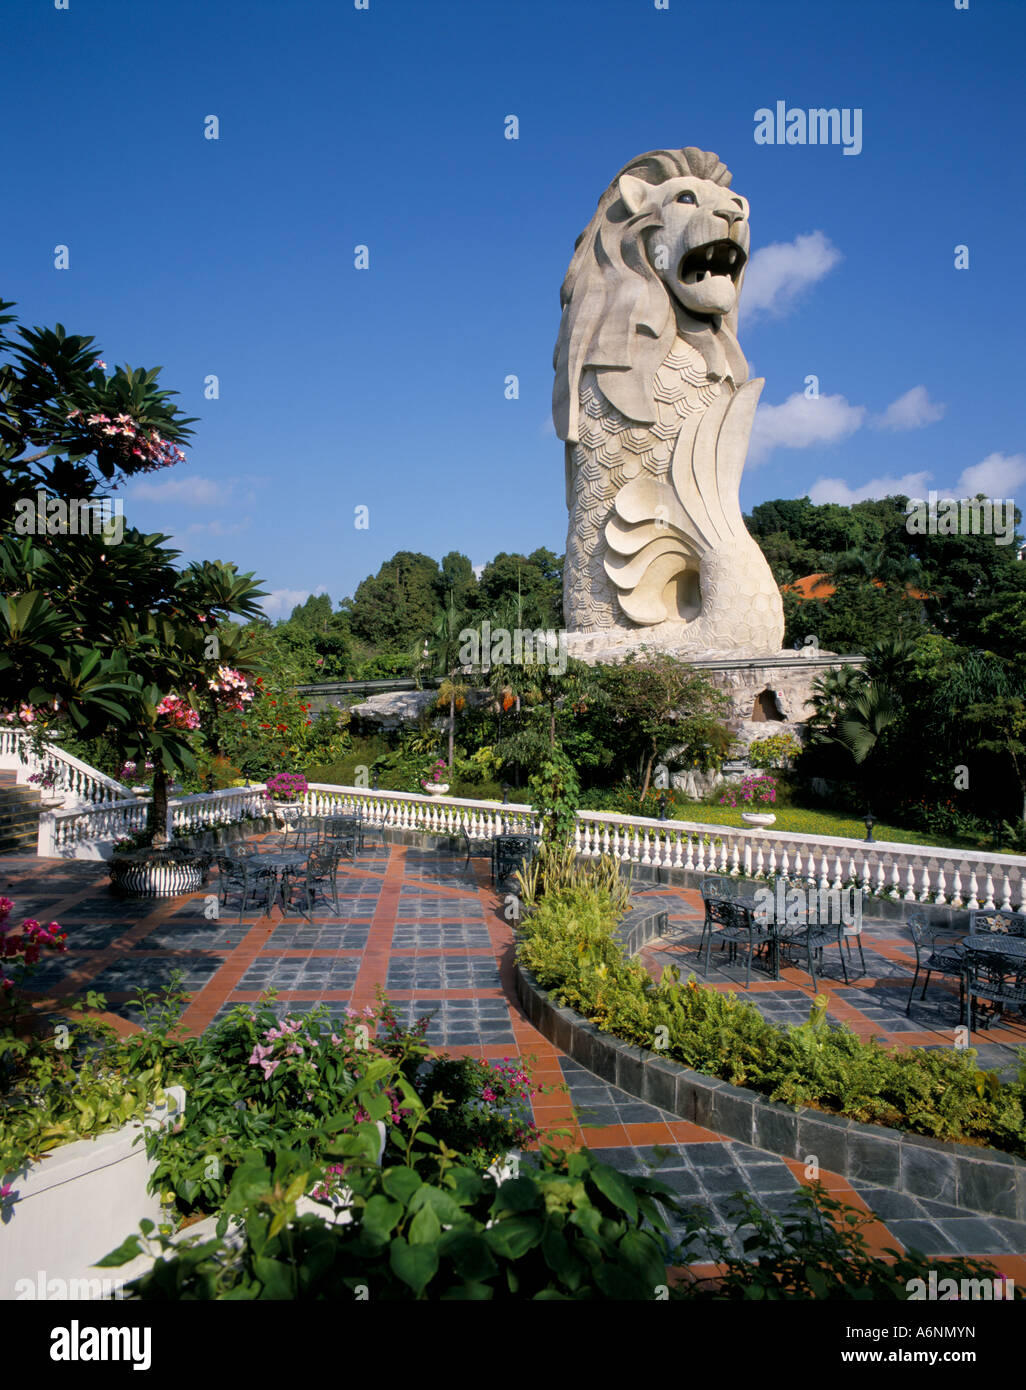 L'île de Sentosa Singapour Merlion Asie Asie du sud-est Banque D'Images